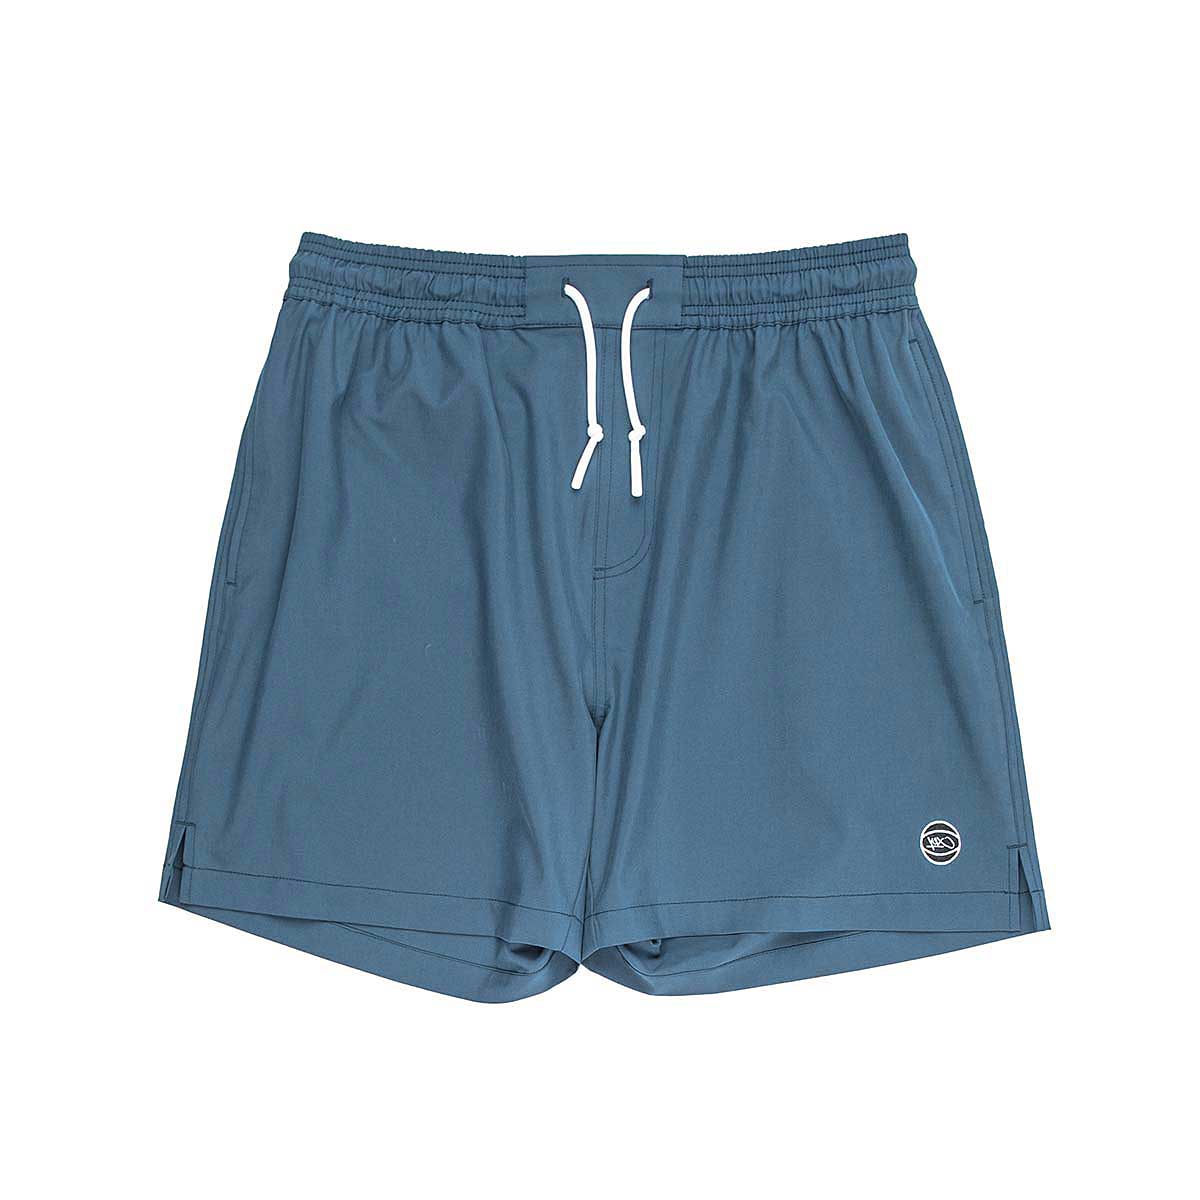 K1X Stockton Shorts, Orion Blue